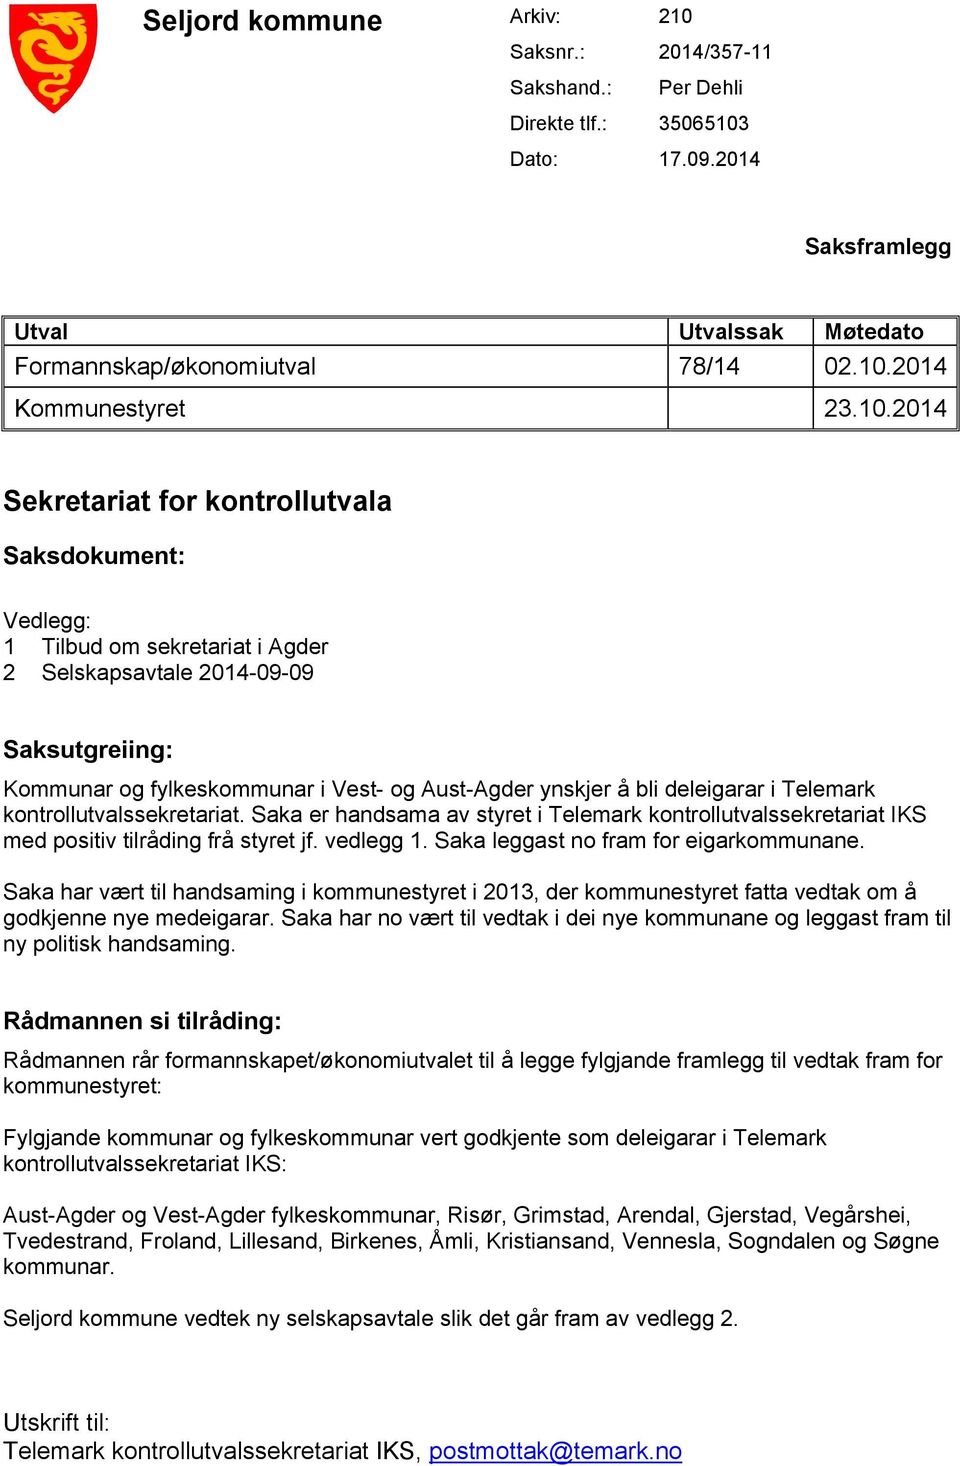 deleigarar i Telemark kontrollutvalssekretariat. Saka er handsama av styret i Telemark kontrollutvalssekretariat IKS med positiv tilråding frå styret jf. vedlegg 1.